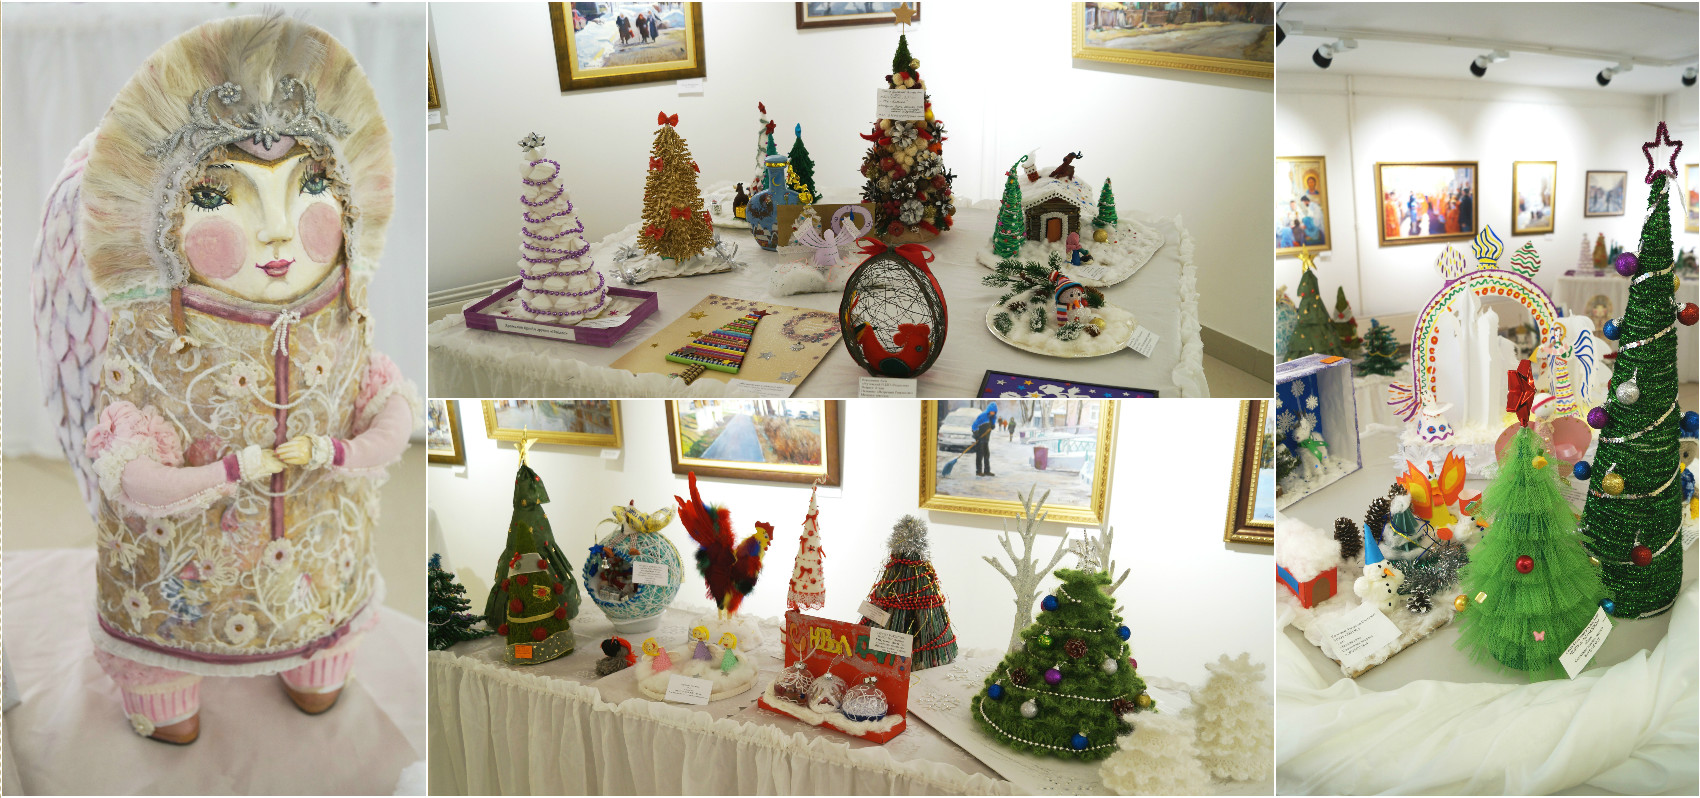 13 декабря 2016 - Открытие выставки декоративно - прикладного искусства «Чудеса Рождества»